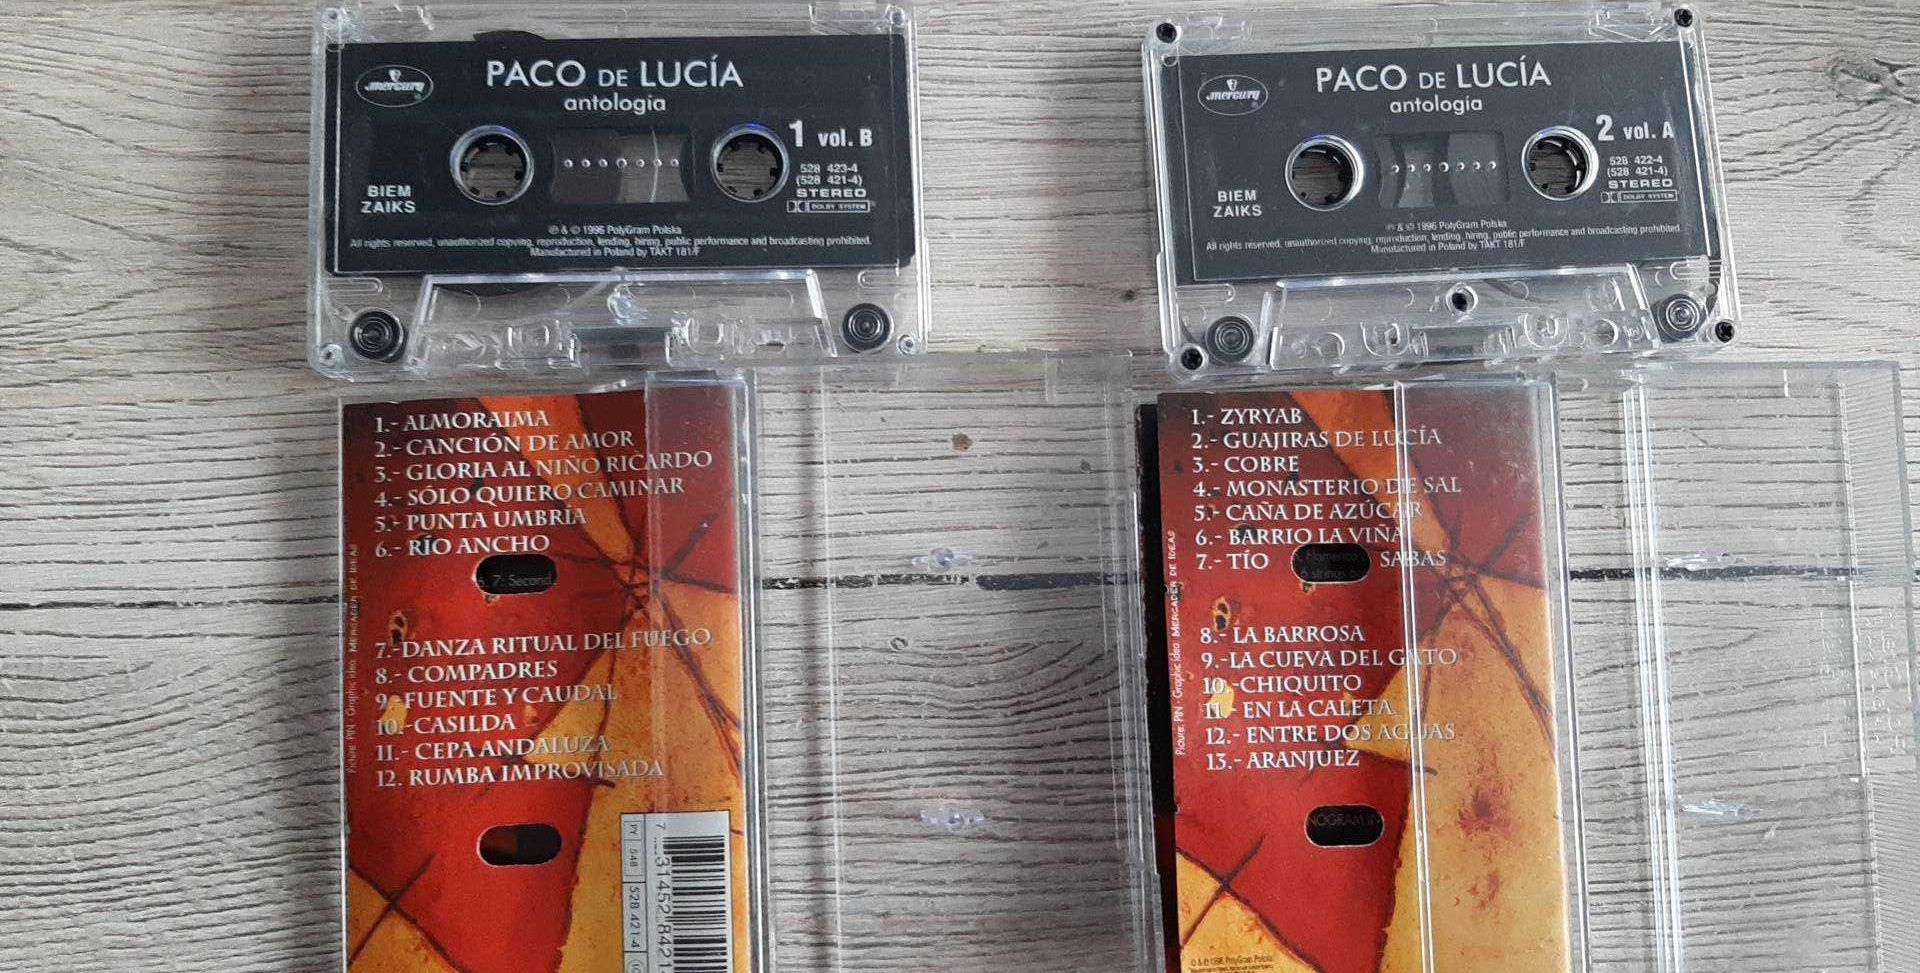 Paco de Lucia " Antologia"- kaseta magnetofonowa